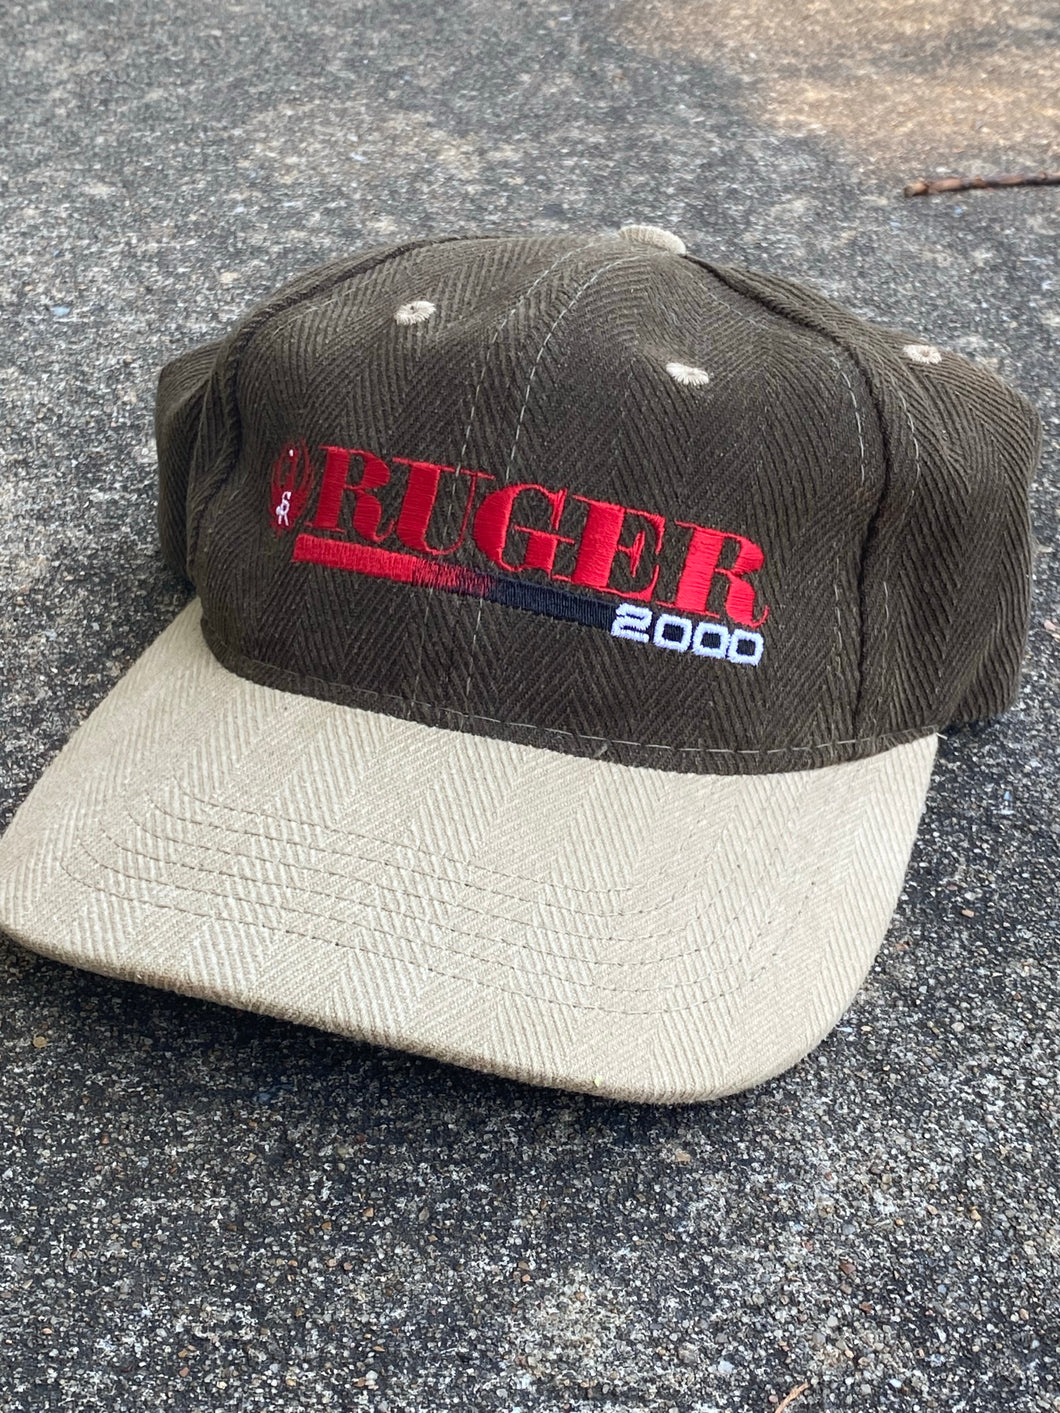 Ruger 2000 Hat